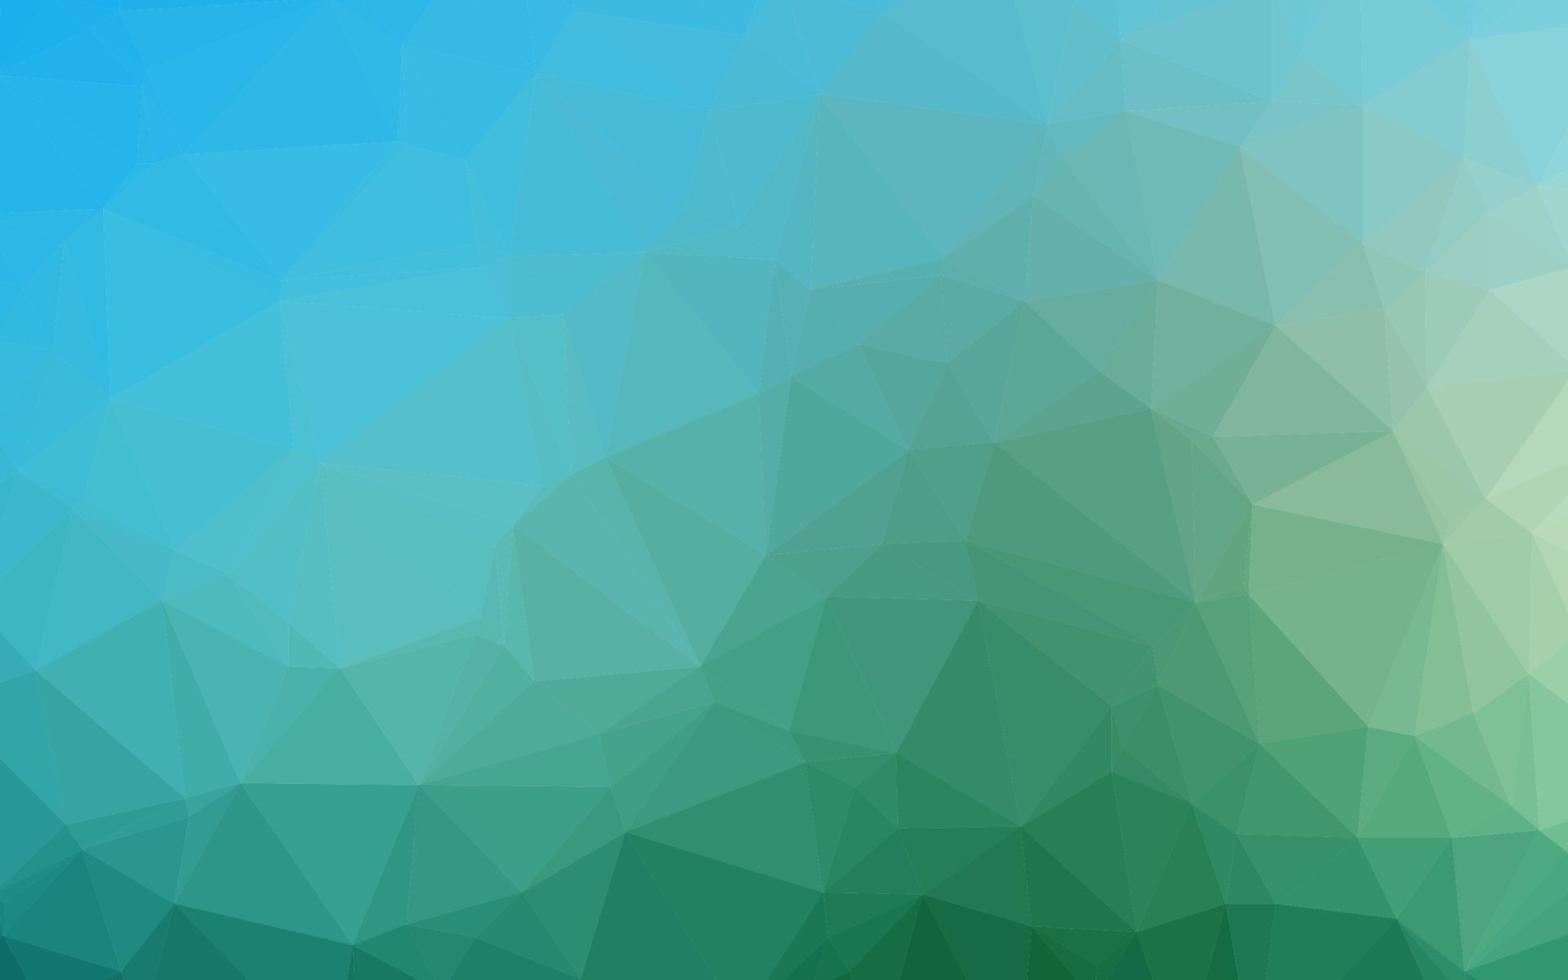 layout poligonal abstrato de vetor azul e verde claro.